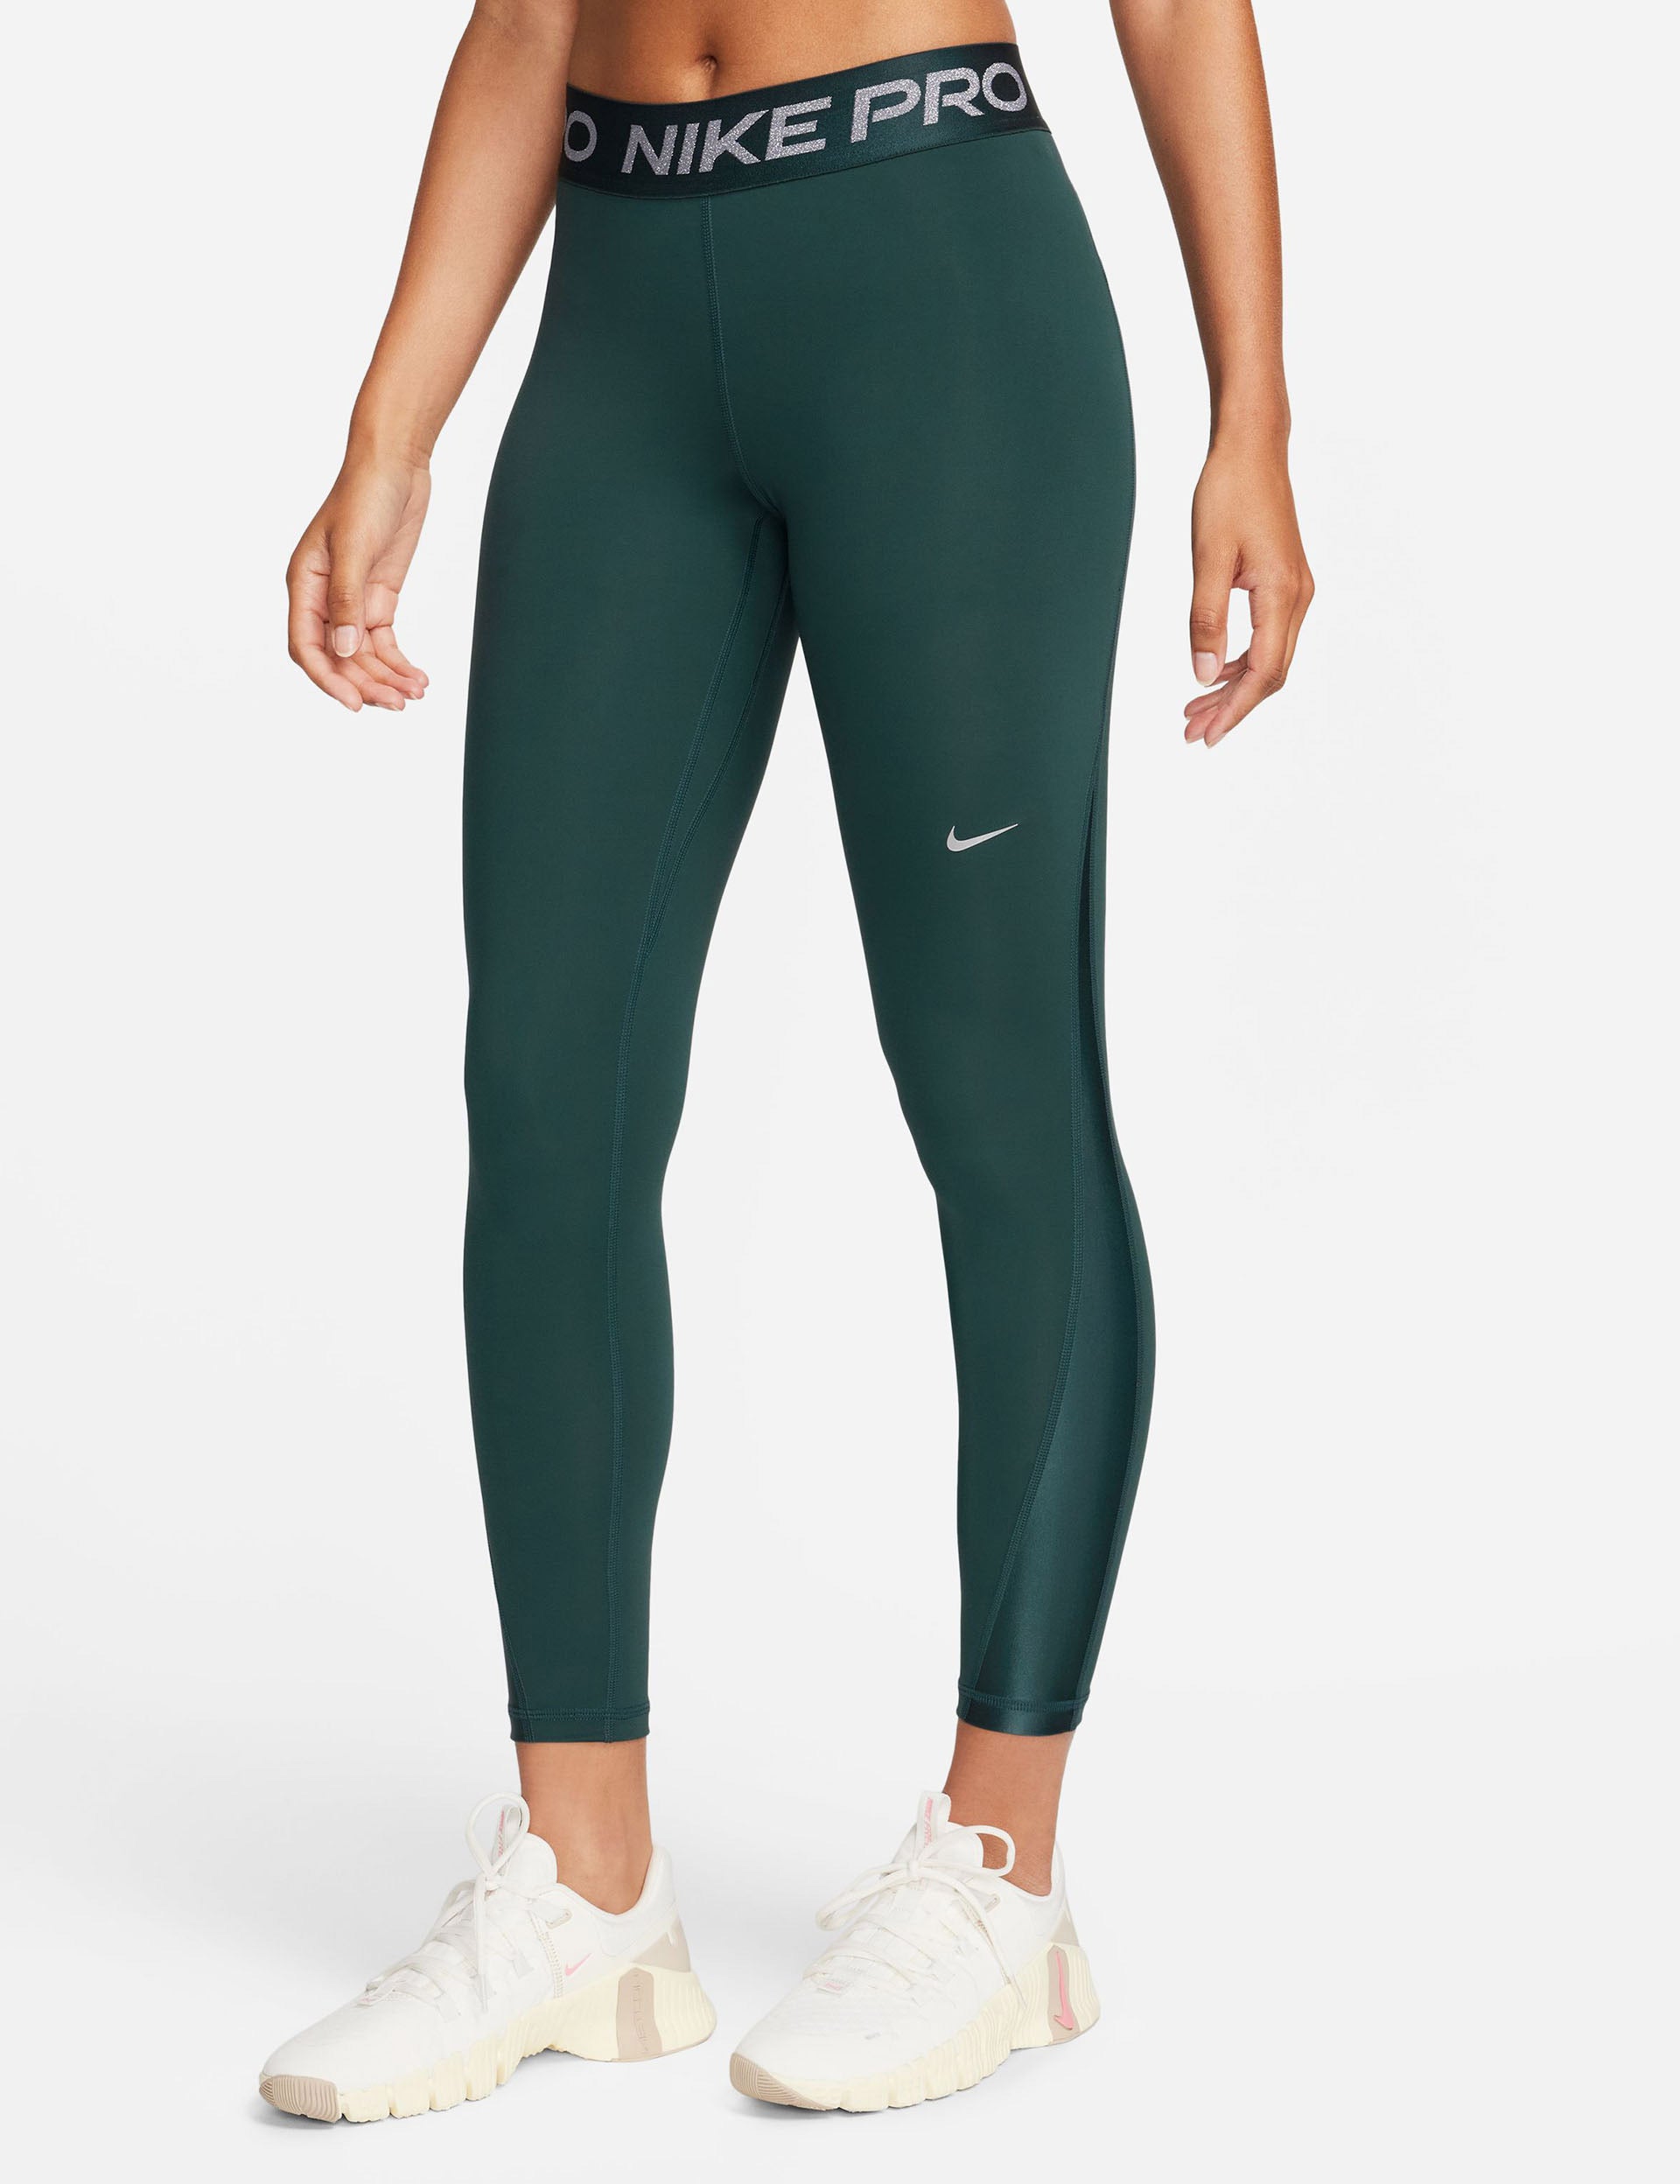 Nike Dri-Fit One Green Women's 7/8 Tights